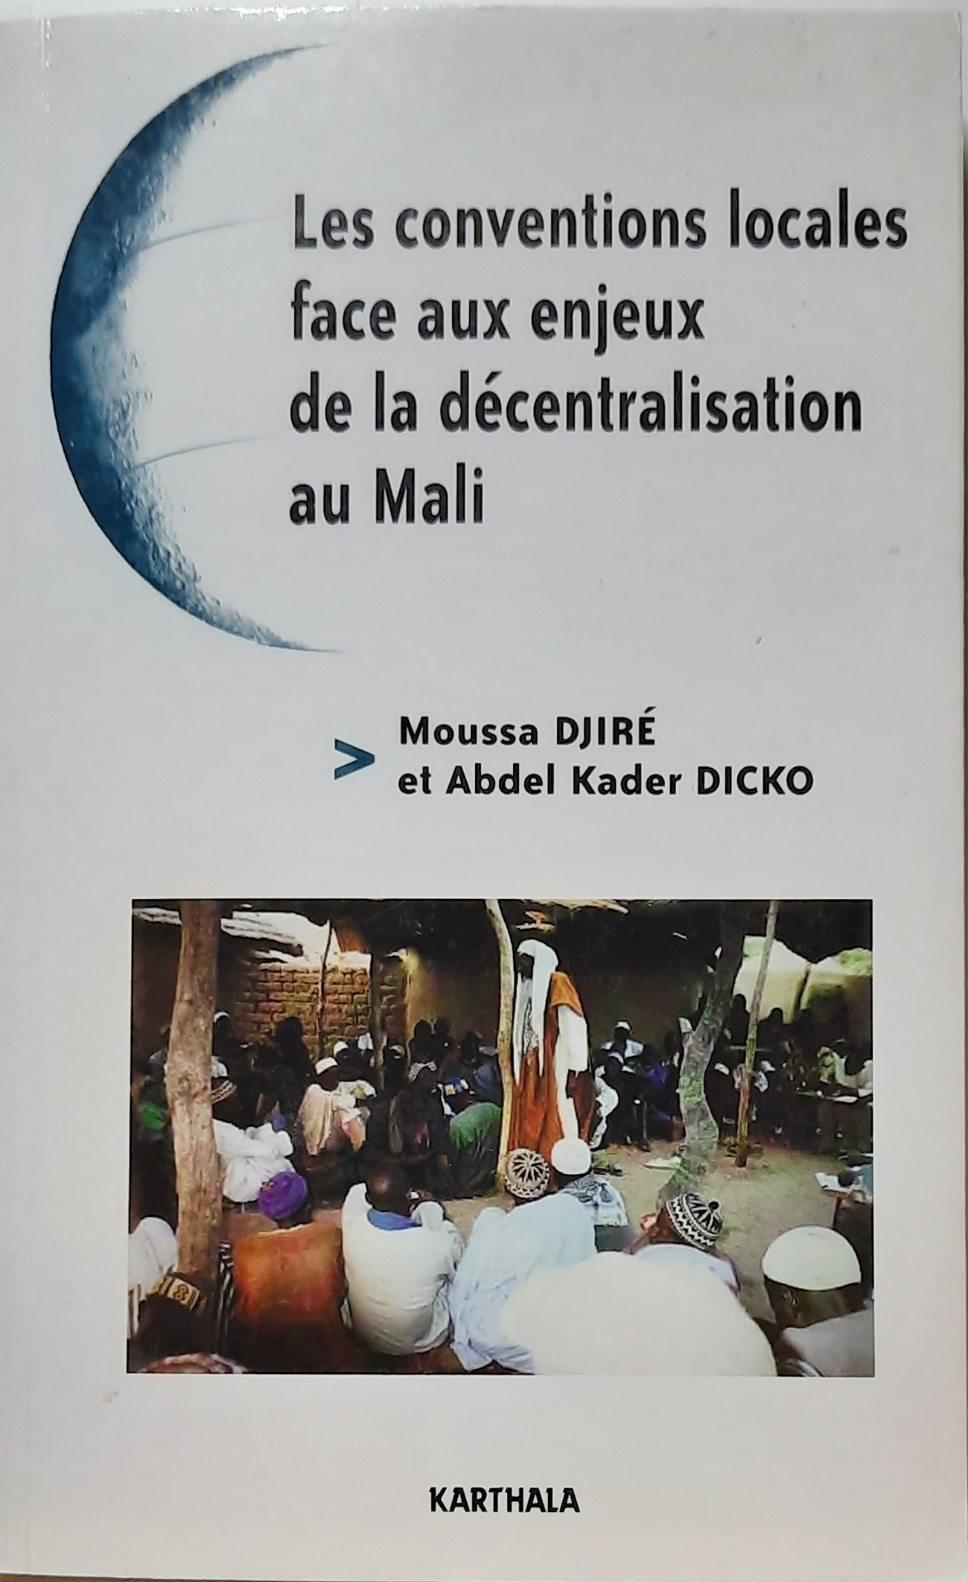 Book cover 202105320099: DJIRE Moussa, DICKO Abdel Kader | Les conventions locales face aux enjeux de la décentralisation au Mali